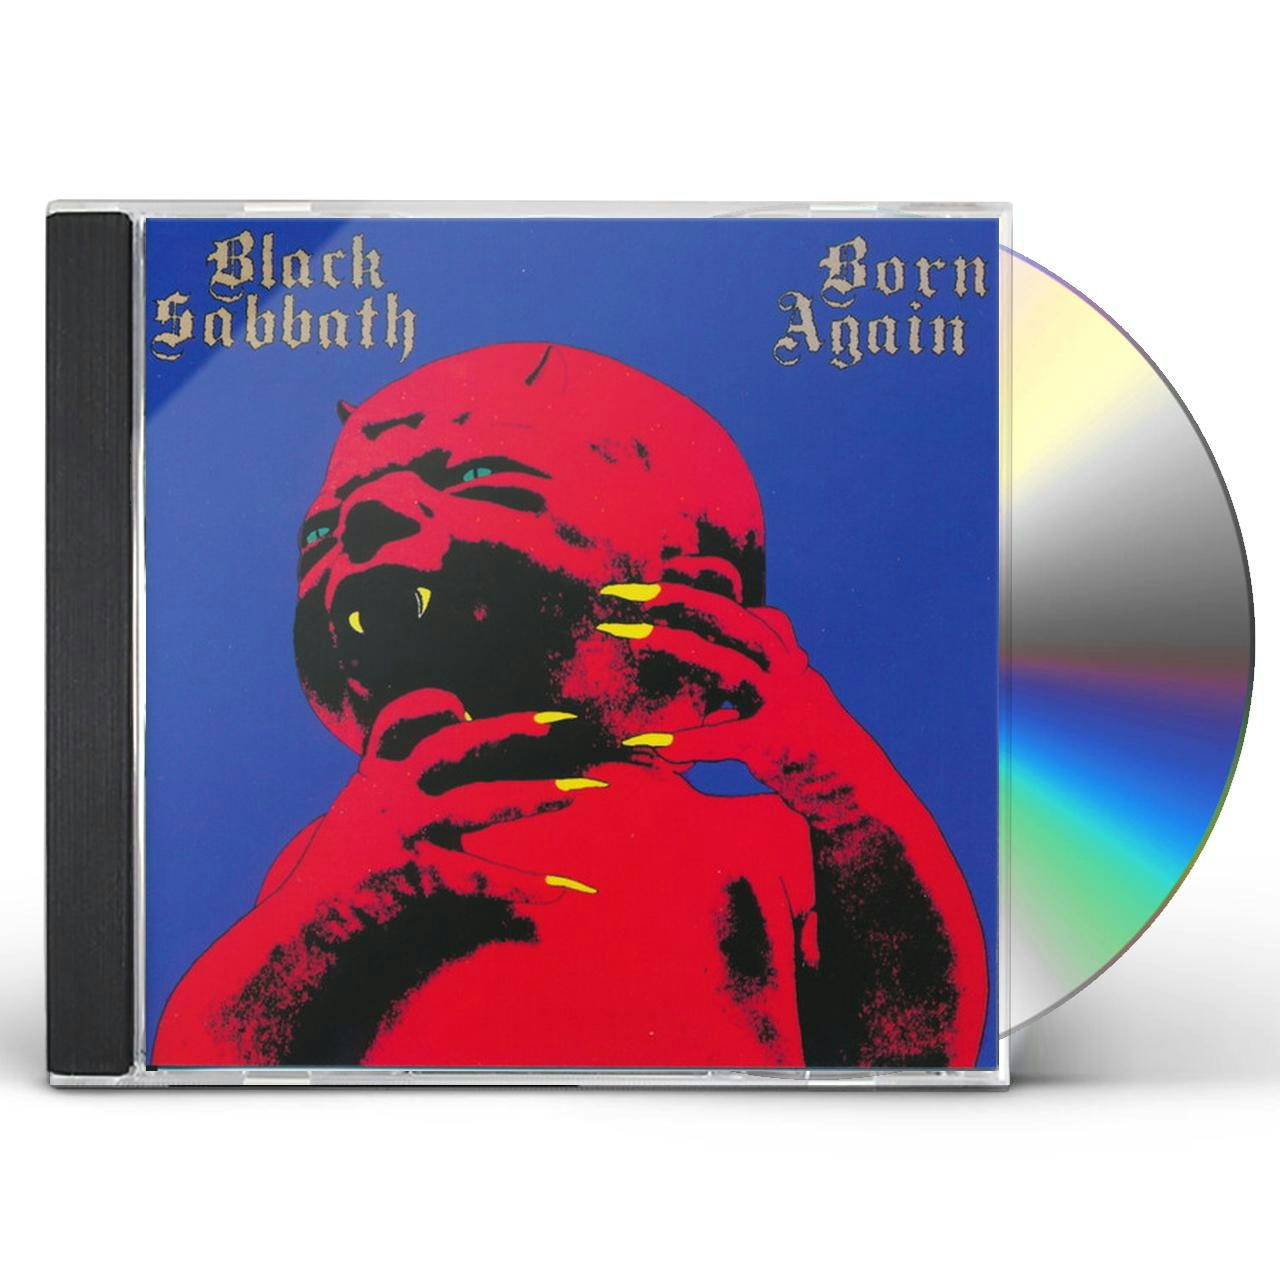 Black Sabbath BORN AGAIN CD